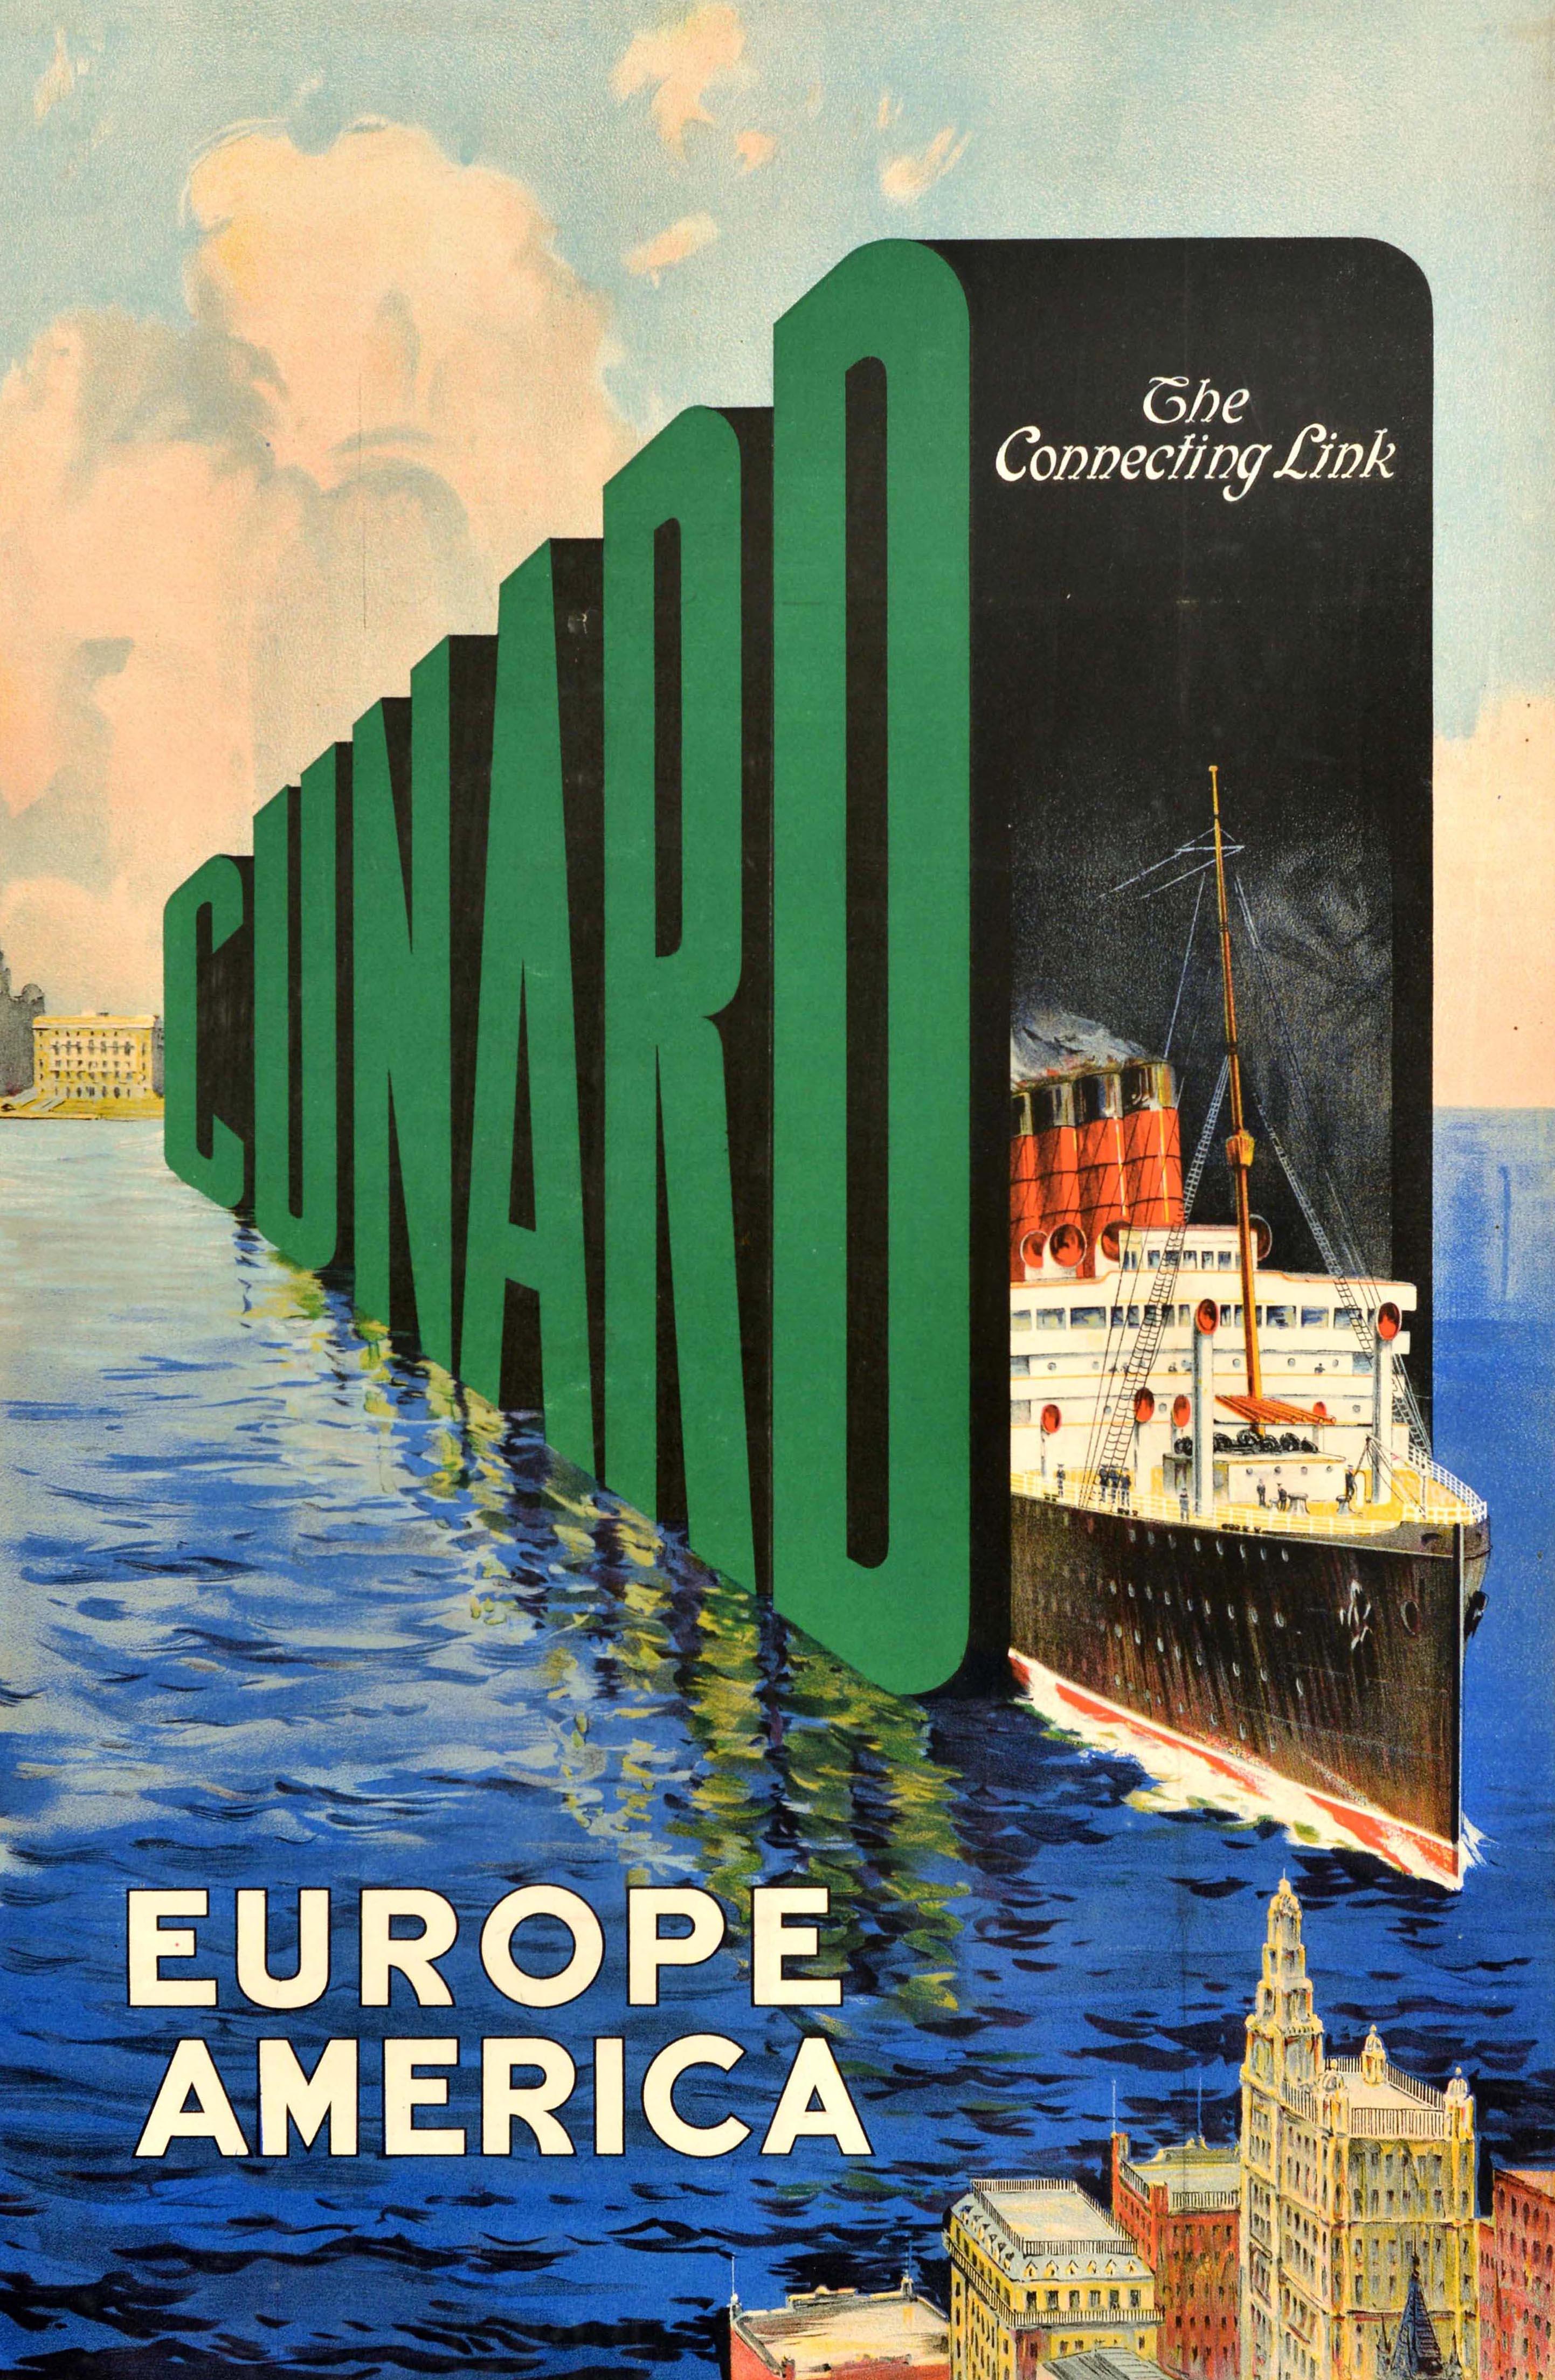 Affiche originale de croisière pour la compagnie Cunard The Connecting Link Europe America, représentant un paquebot de la compagnie Cunard Line naviguant en dehors des grandes lettres vertes et noires sur la mer entre l'Europe représentée par une